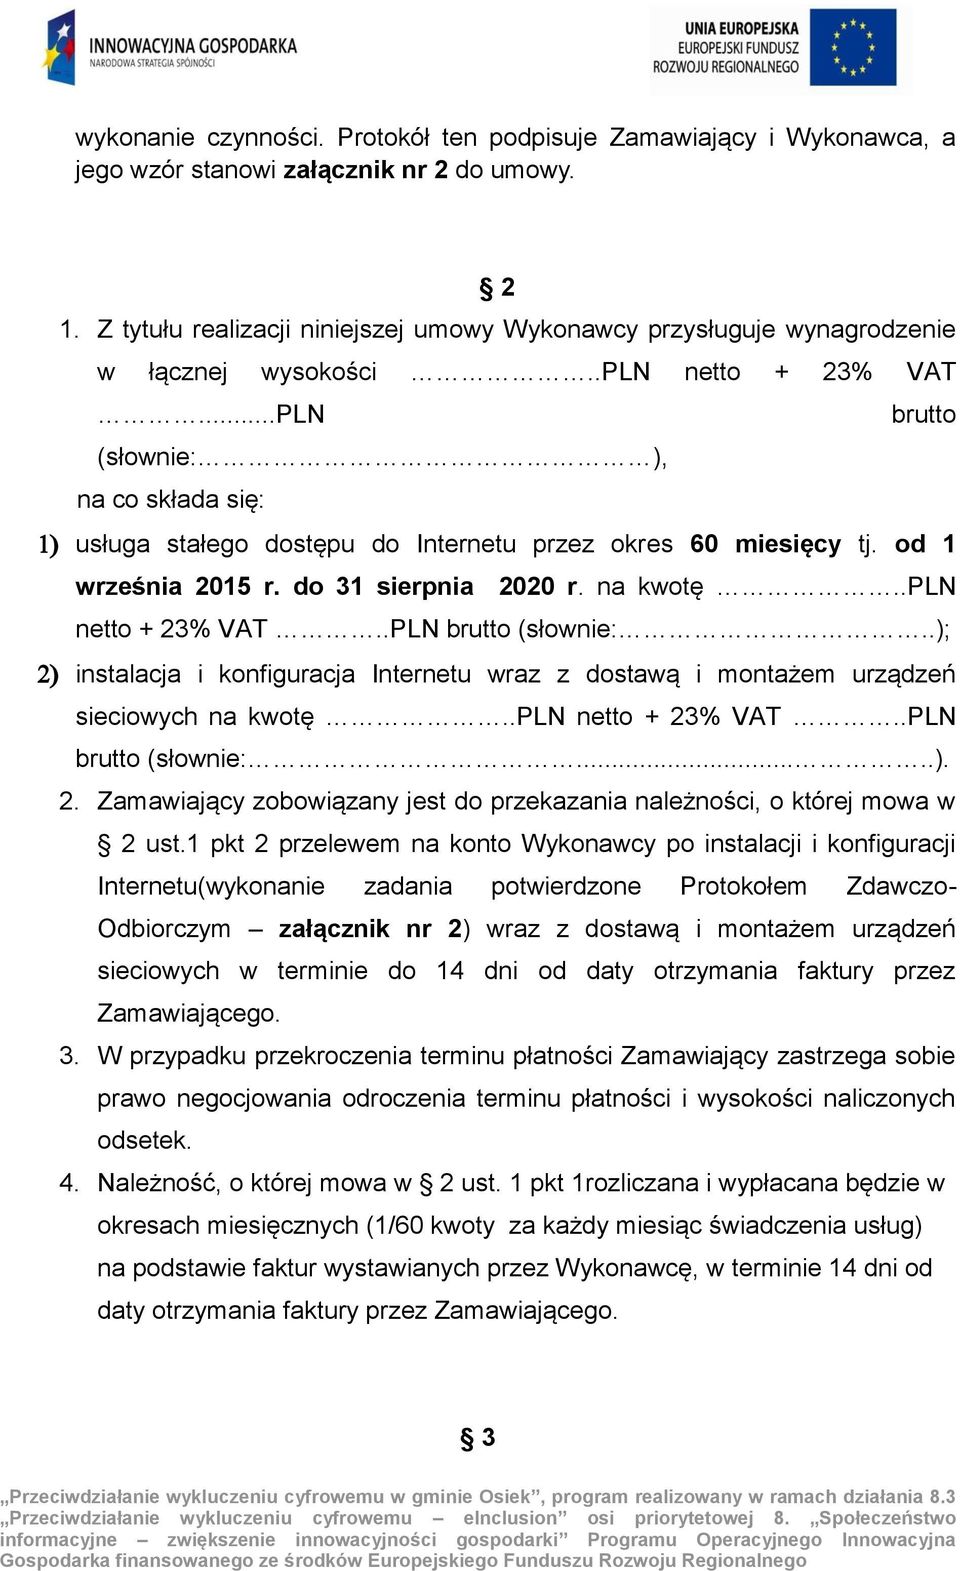 ..PLN brutto (słownie: ), na co składa się: usługa stałego dostępu do Internetu przez okres 60 miesięcy tj. od 1 września 2015 r. do 31 sierpnia 2020 r. na kwotę..pln netto + 23% VAT.